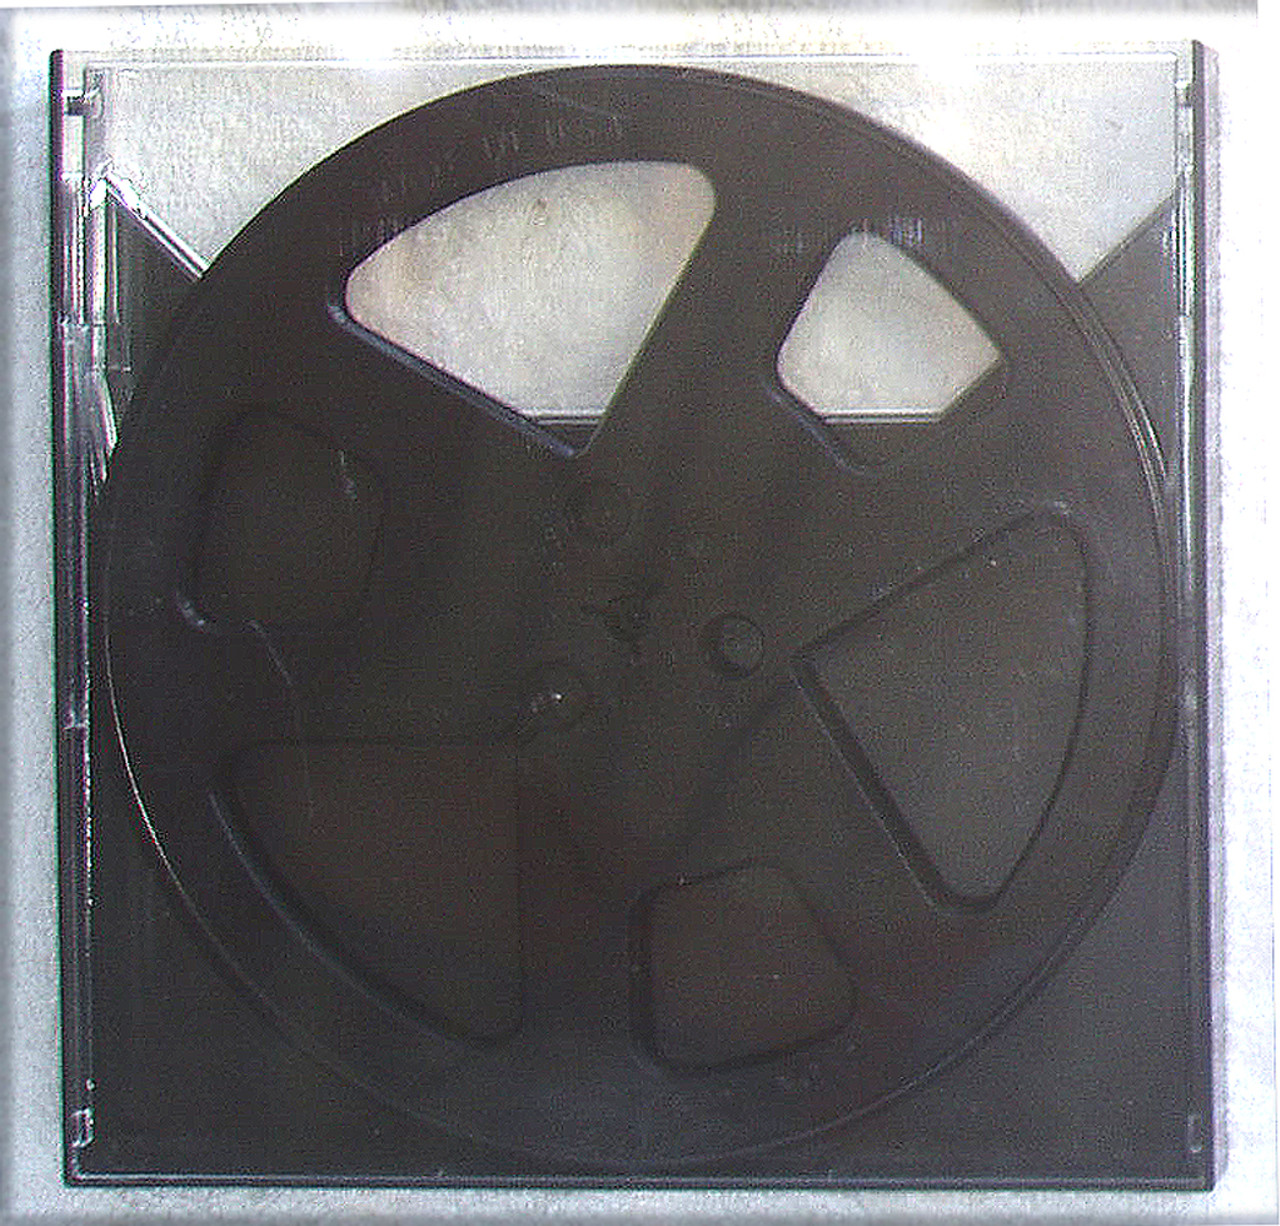 7 Inch Metal Reel In a White Box - Empty Reels - Reel-to-Reel - Blank Media  (Tape, Optical, etc) 